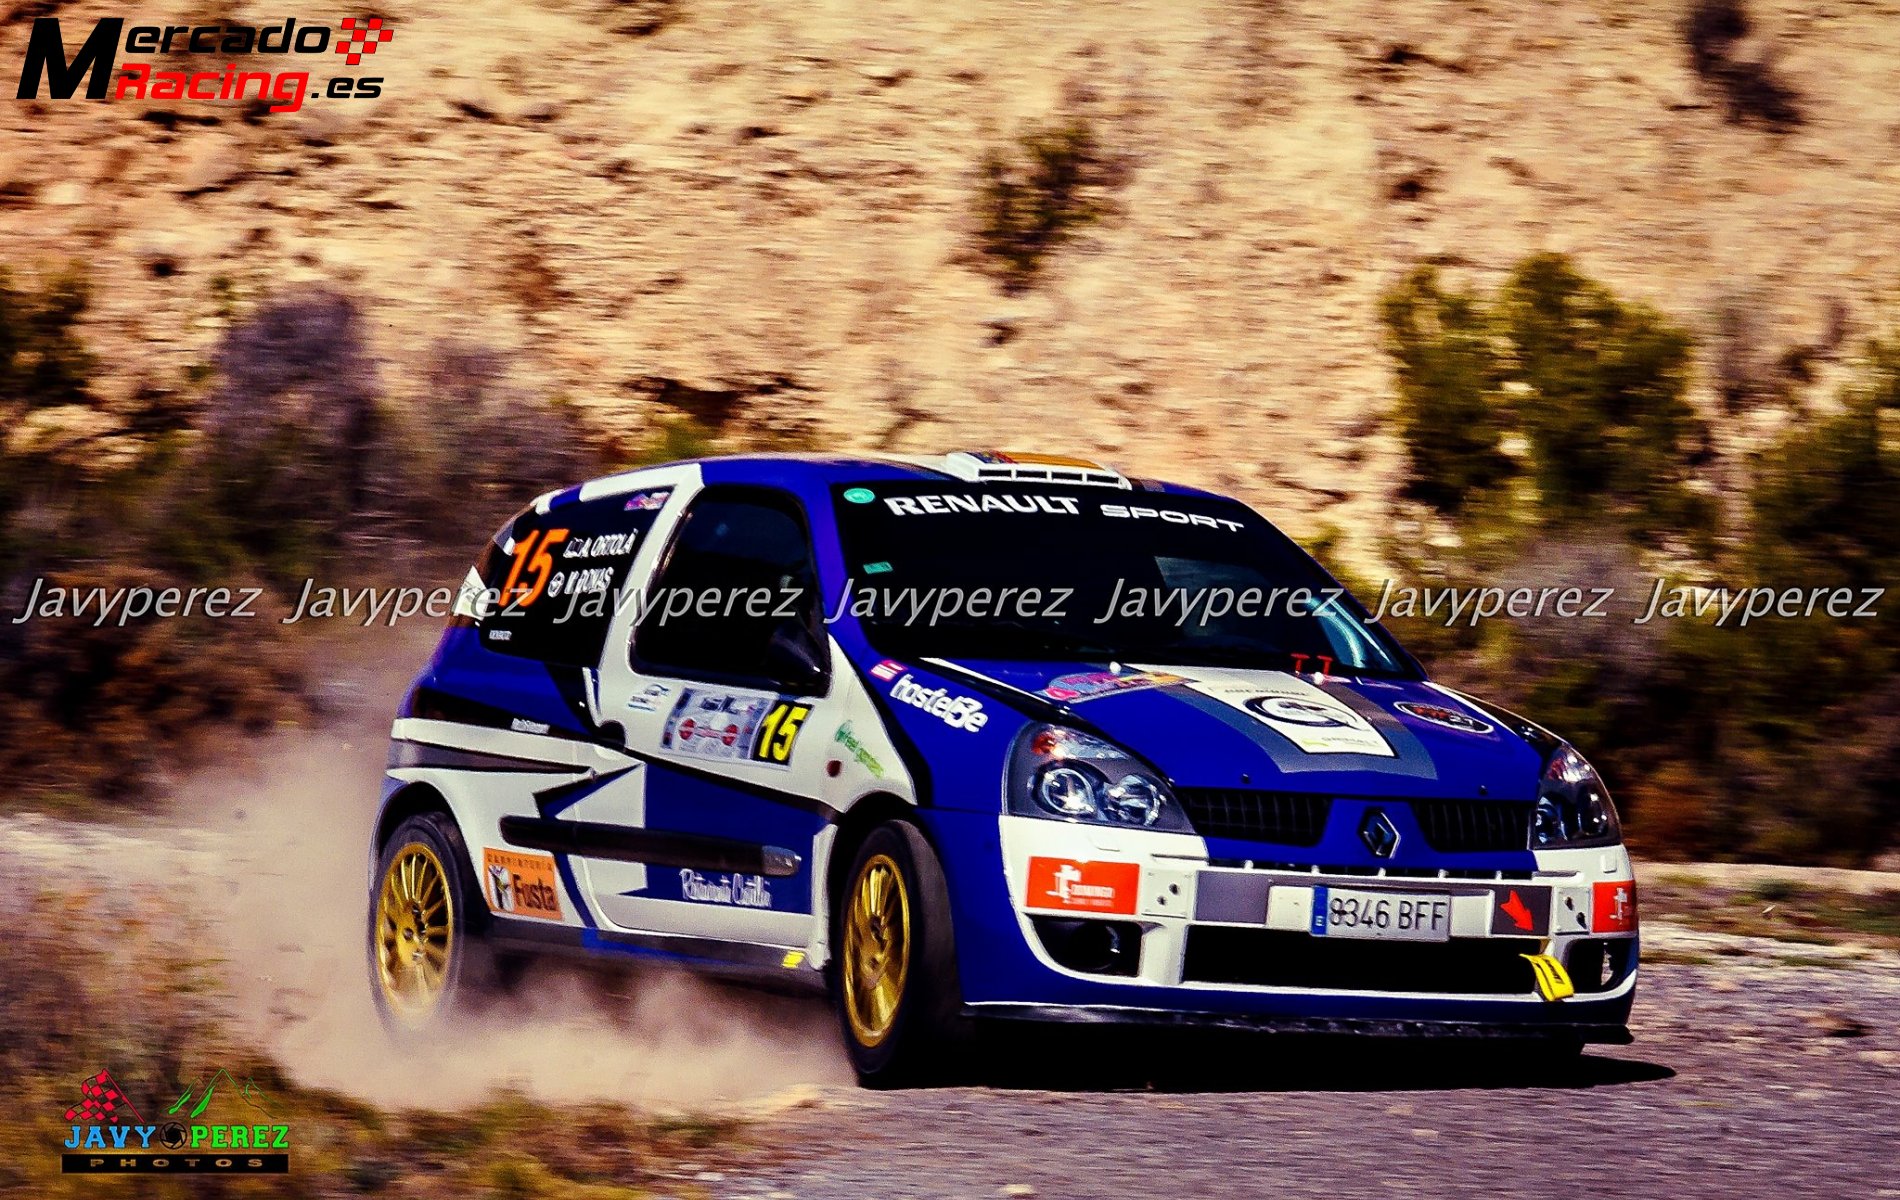 Clio sport 2000 16v